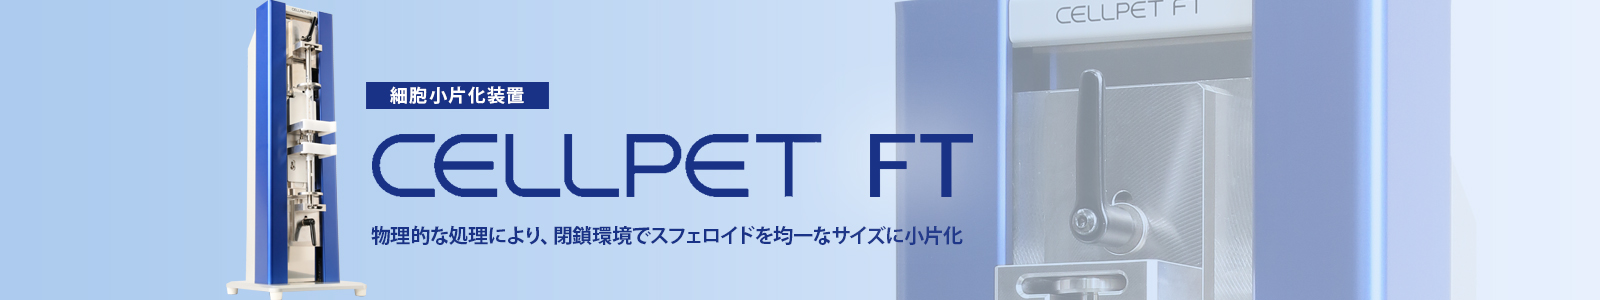 CellPet FT